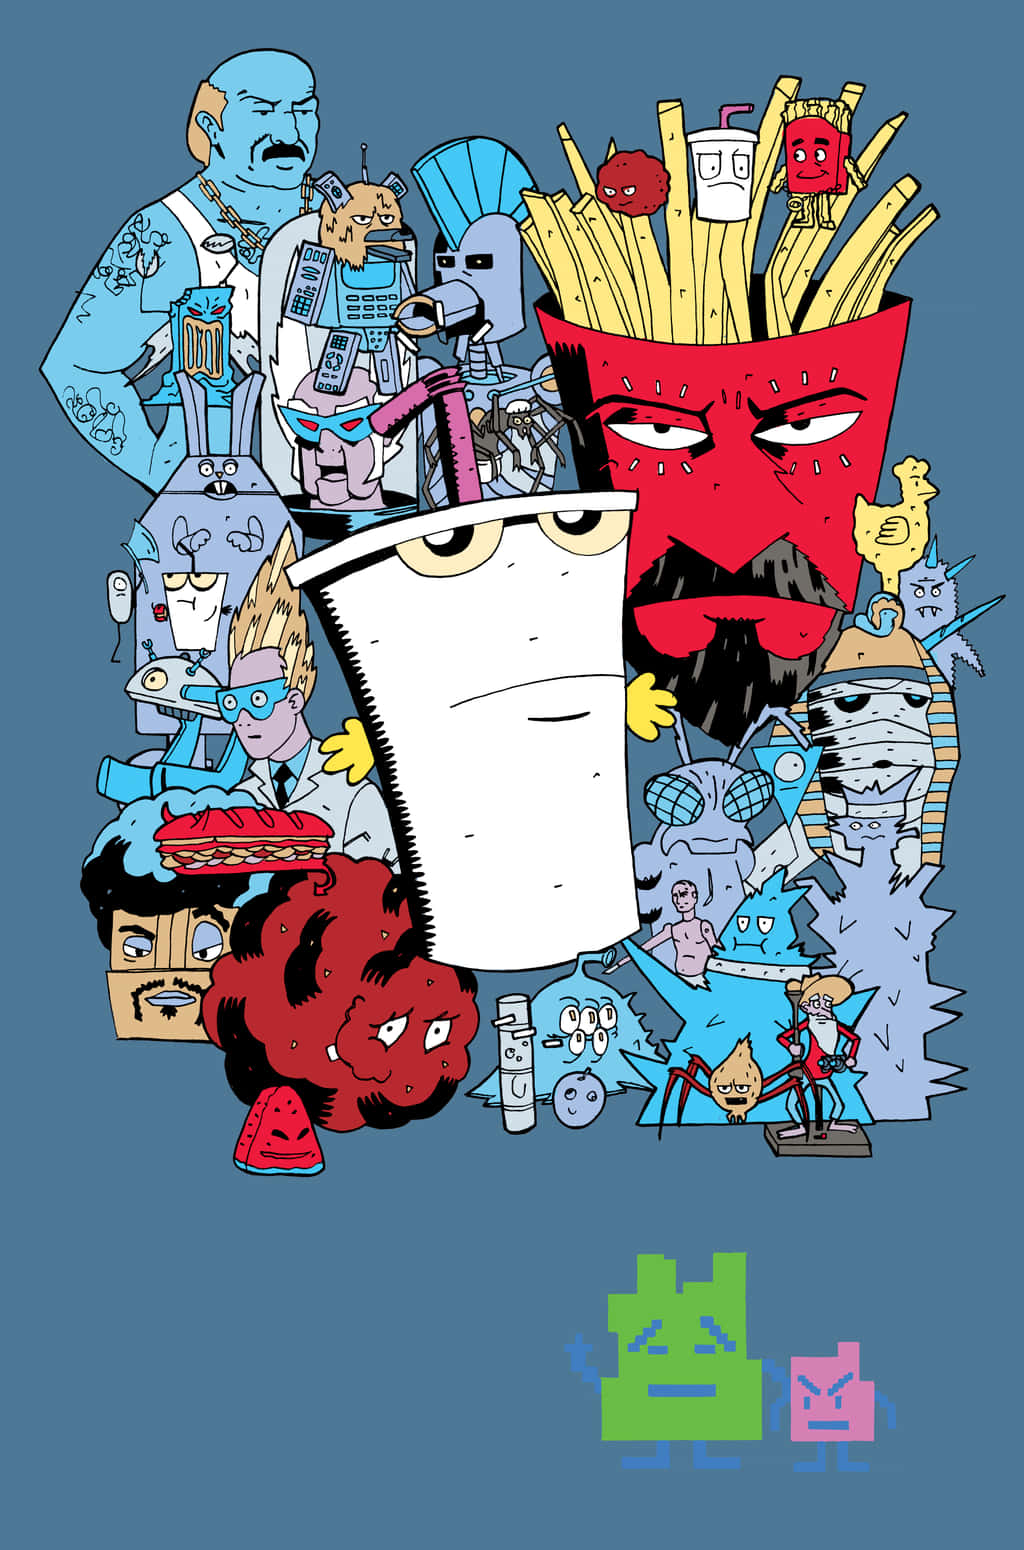 Et tegneseriekarakter omgivet af andre tegneseriekarakterer Wallpaper